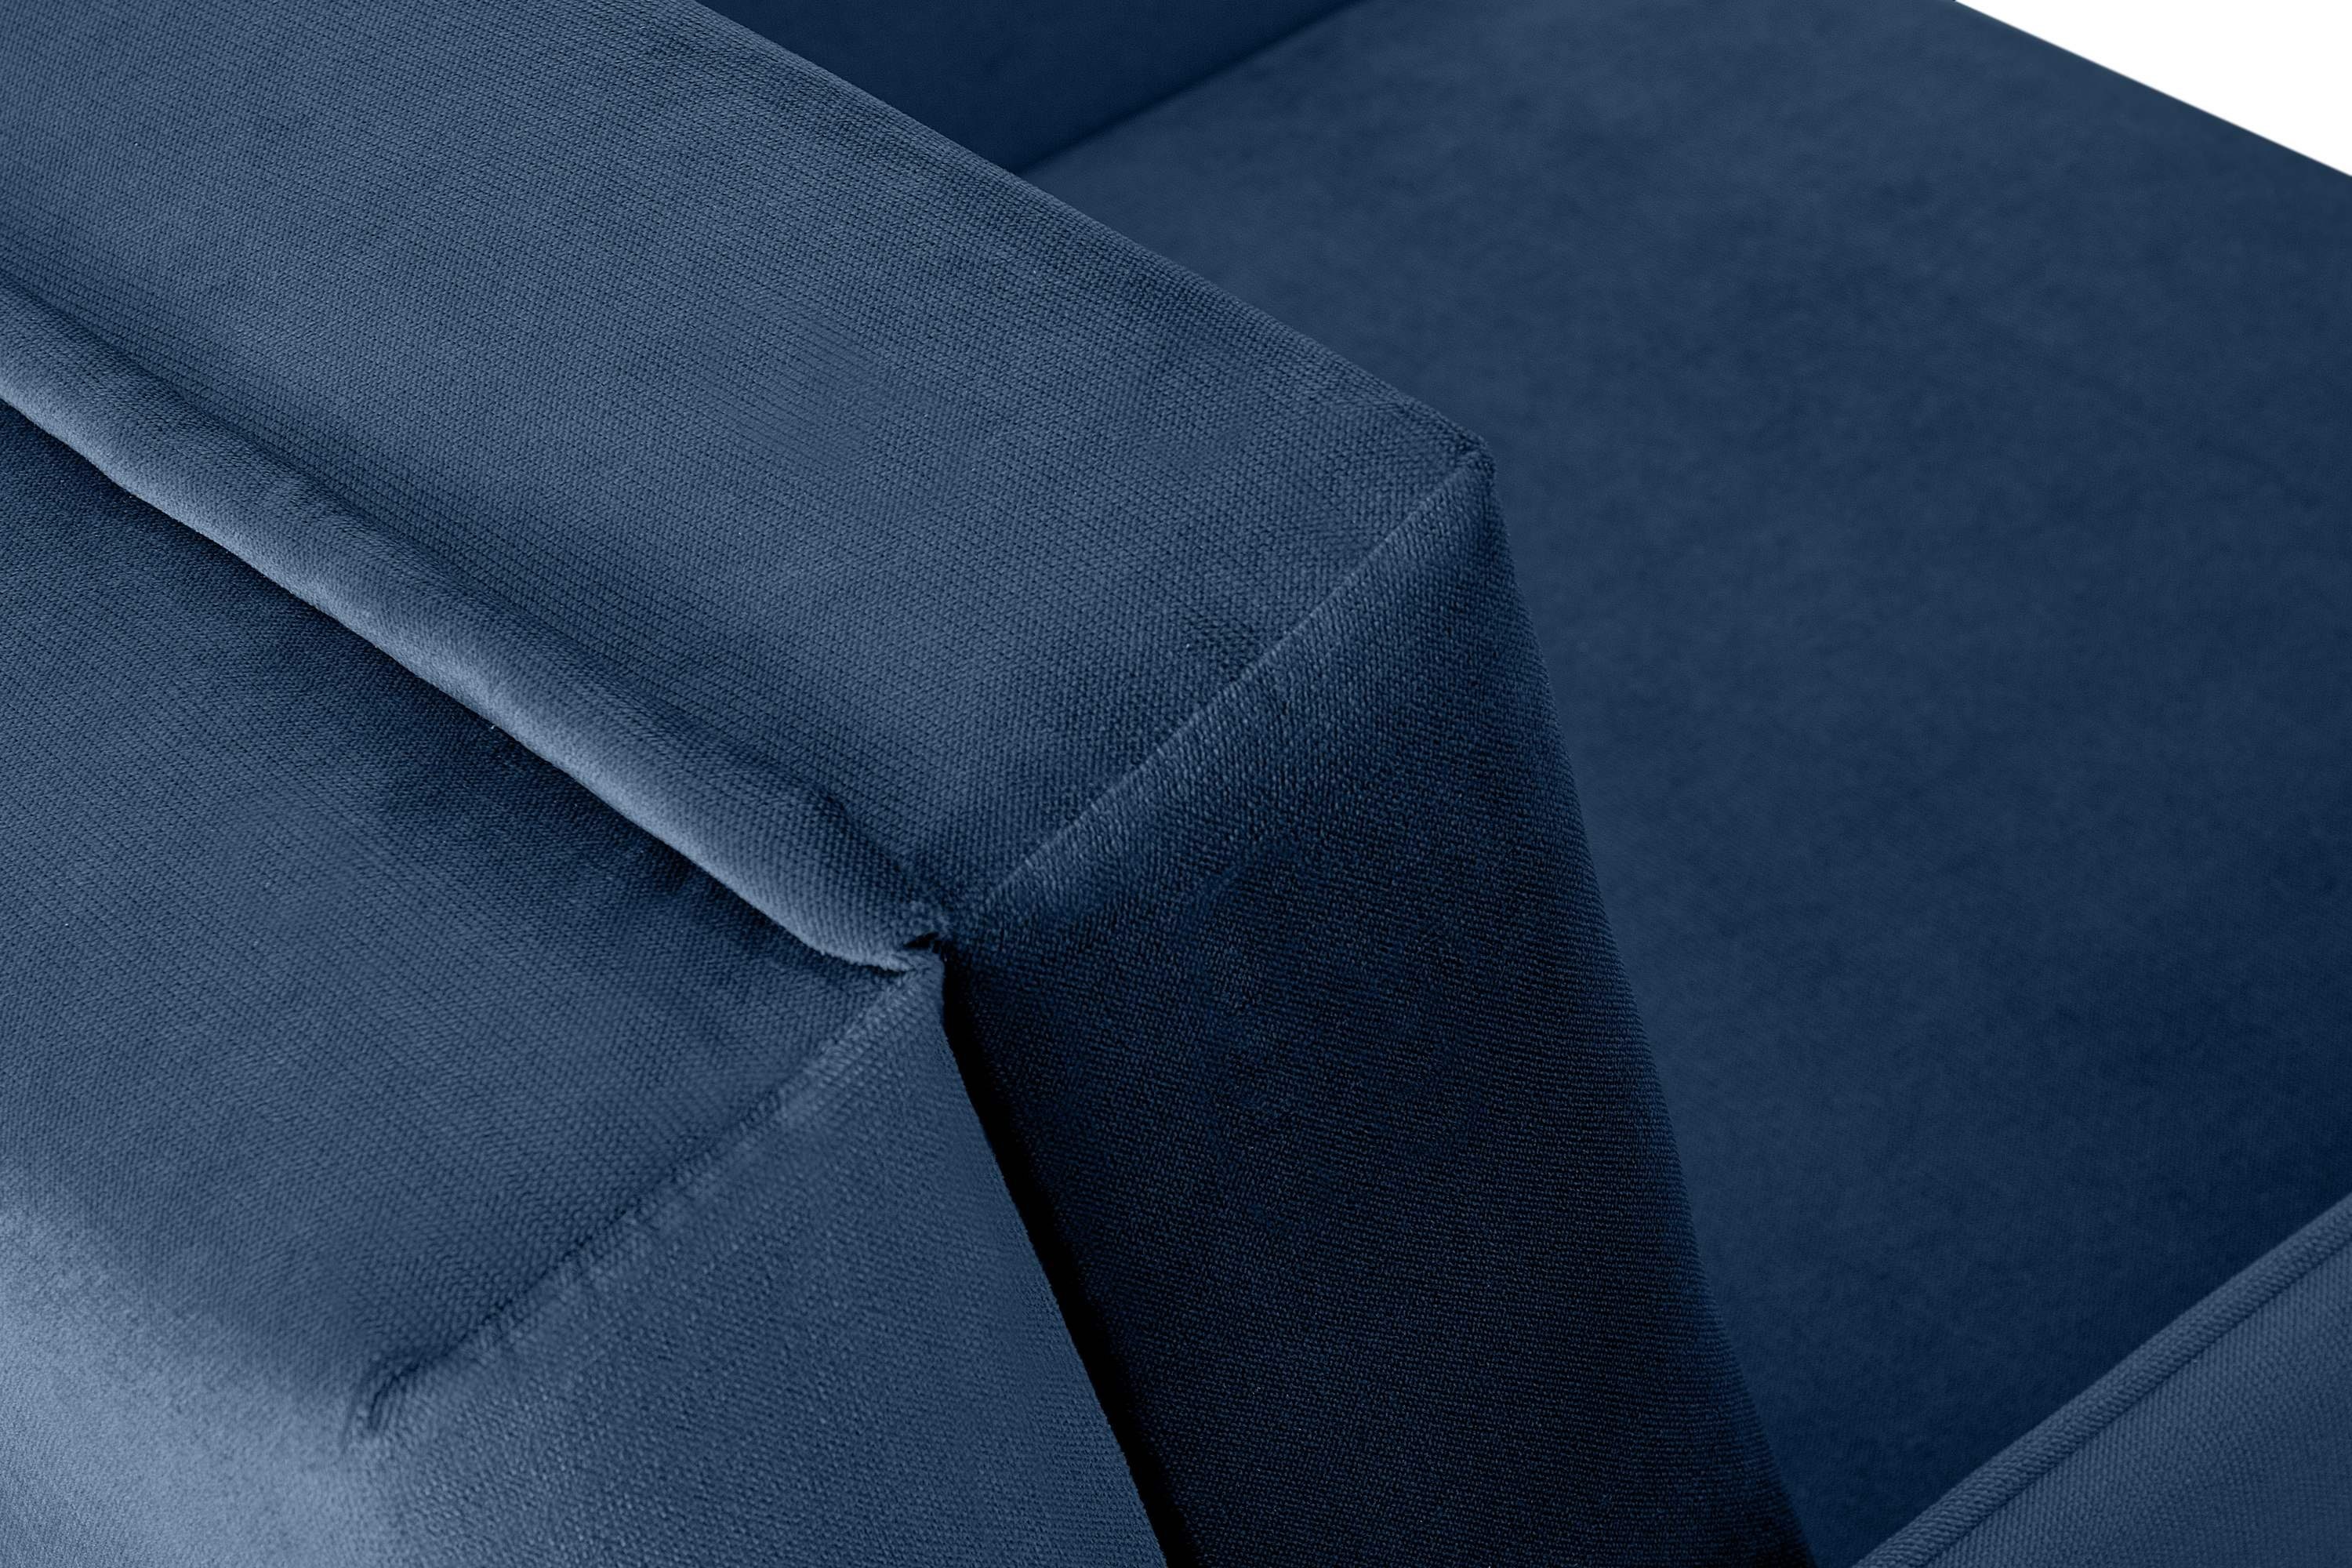 Konsimo Sessel PEDATU und mit langlebiges Bettkasten, Schlaffunktion, marineblau mit schmutzabweisendes Liegesessel